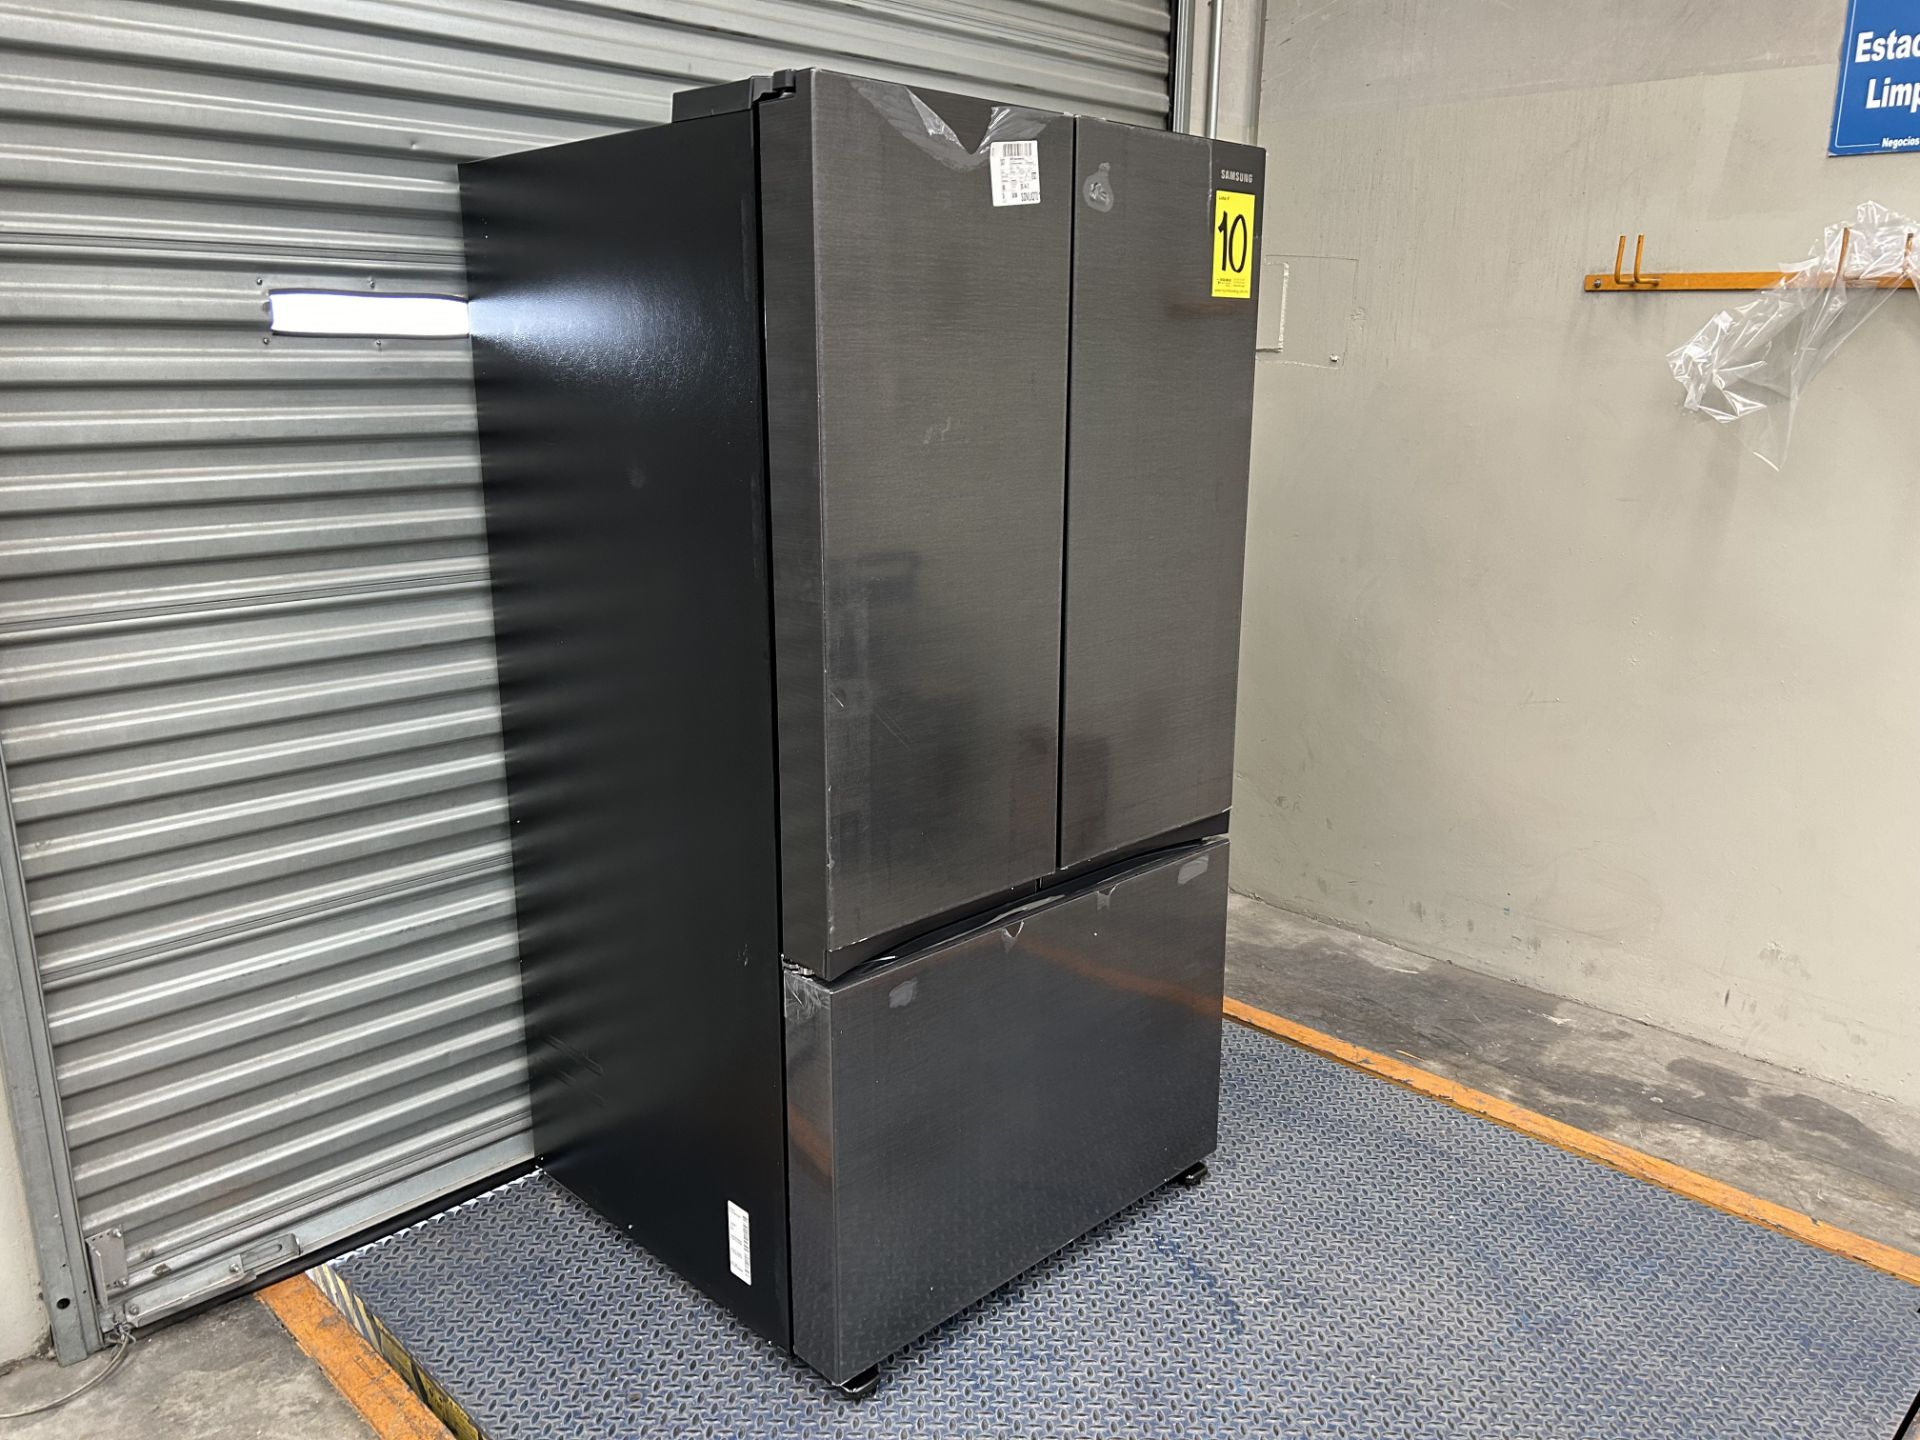 (NUEVO) Lote de 1 Refrigerador Marca SAMSUNG, Modelo RF32CG5N10B1, Serie 00968T, Color GRIS. - Image 2 of 6